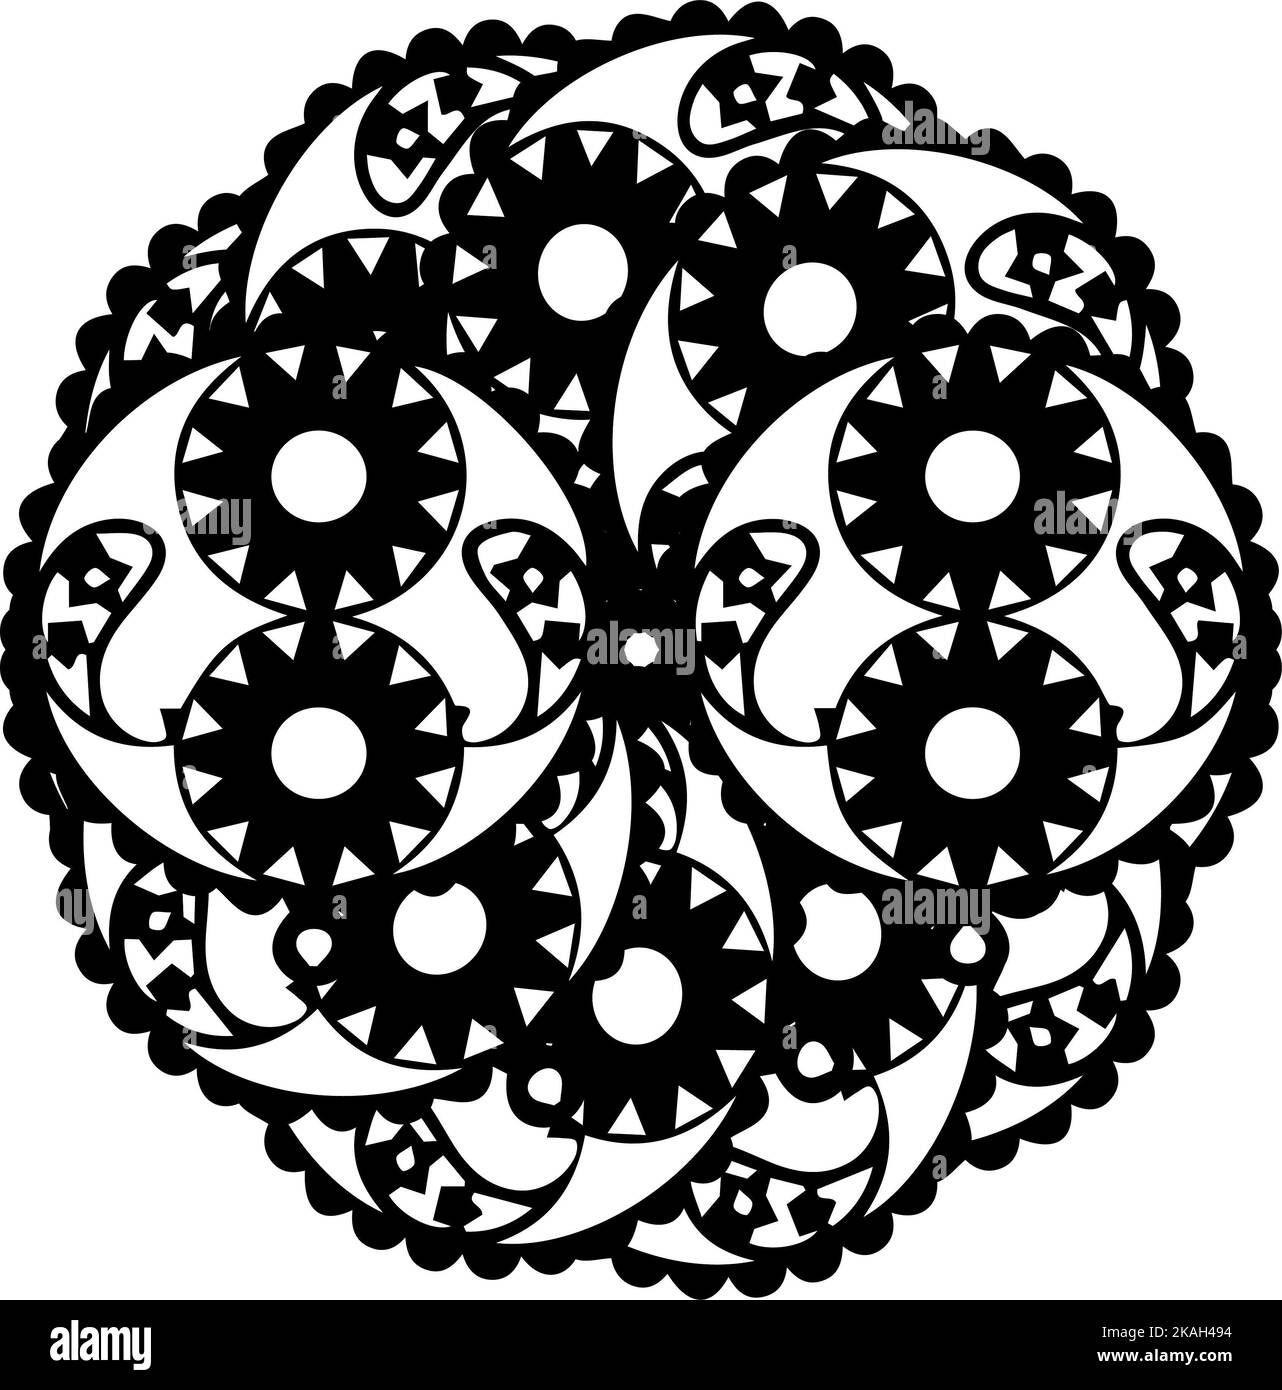 Conception de mandala différente , principalement faite de fleurs et de lignes centrées sur un fond blanc Banque D'Images